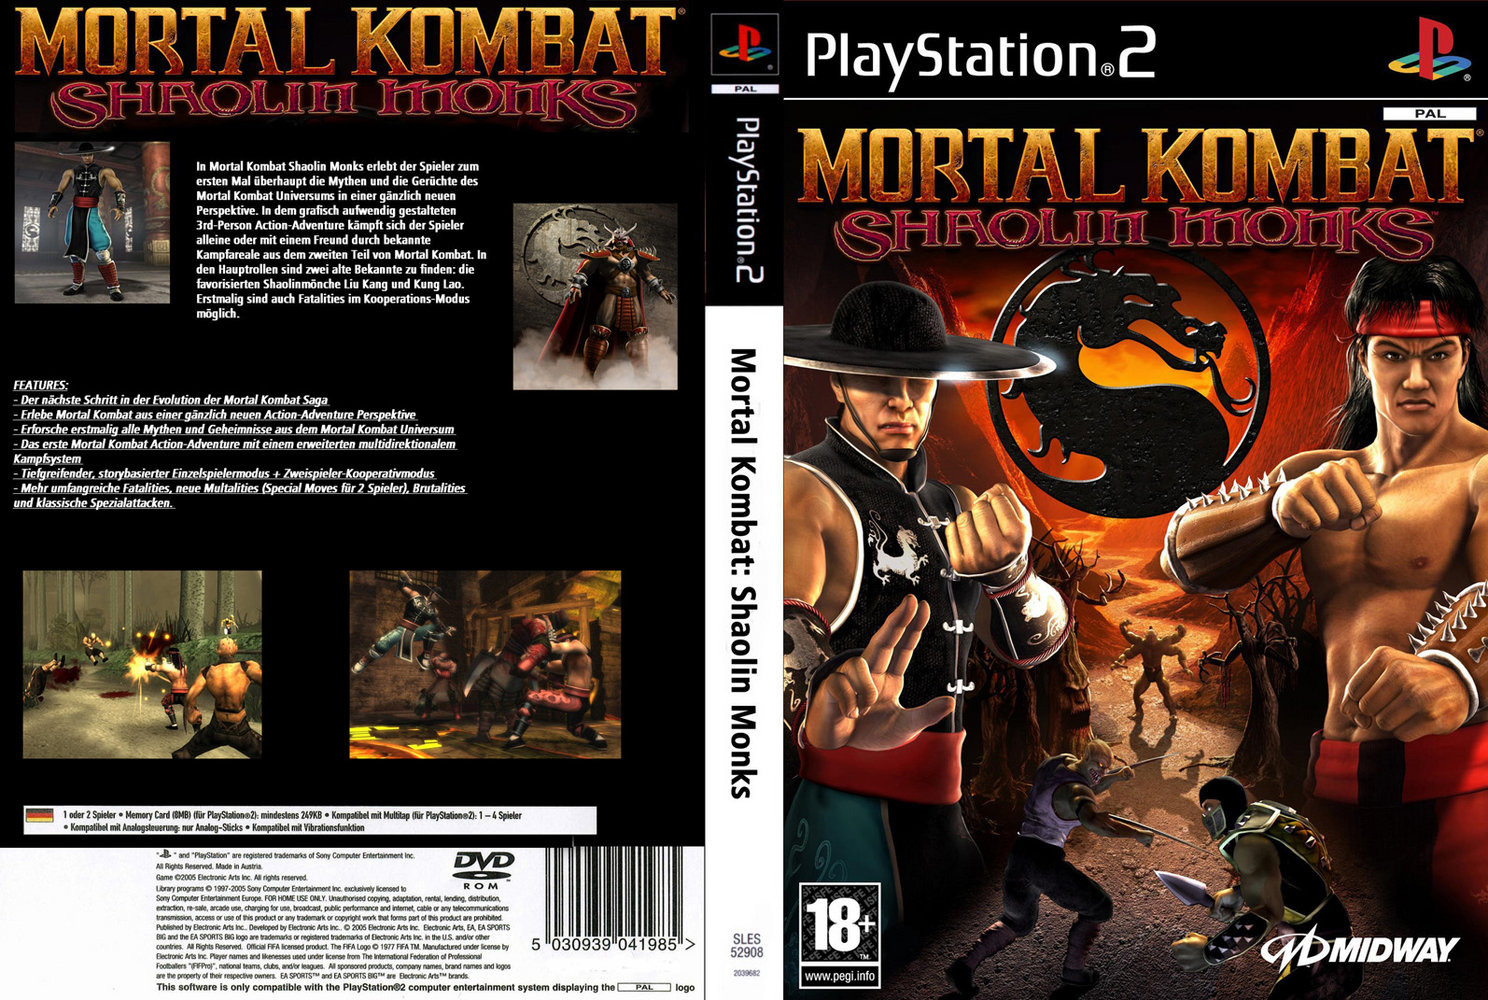  تحميل لعبة Mortal Kombat Shaolin Monks PS2  20110129220444!MKSM_PAL